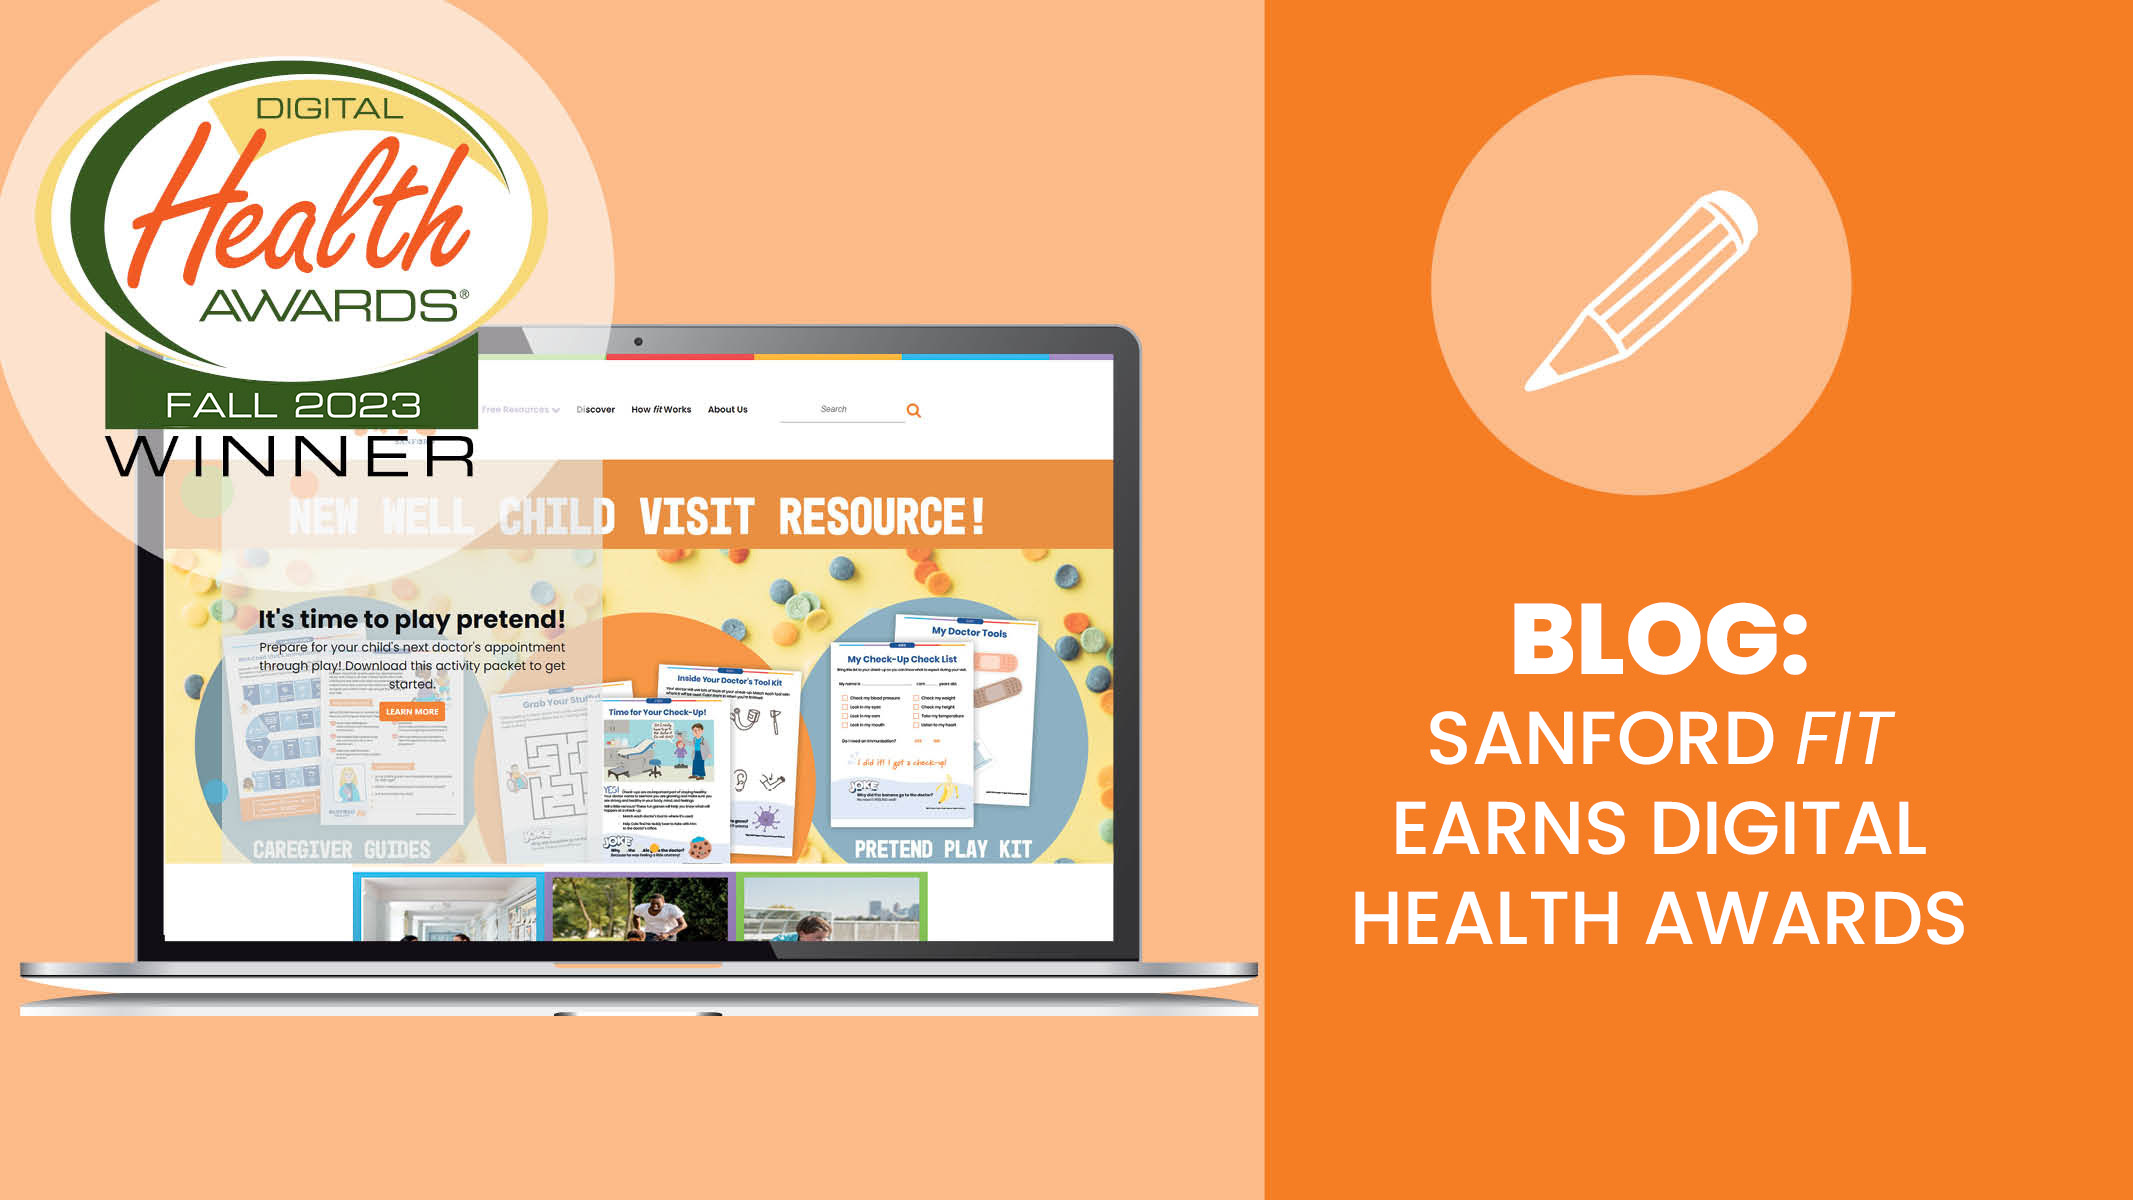 Sanford fit Earns Digital Health Awards blog - Sanford fit